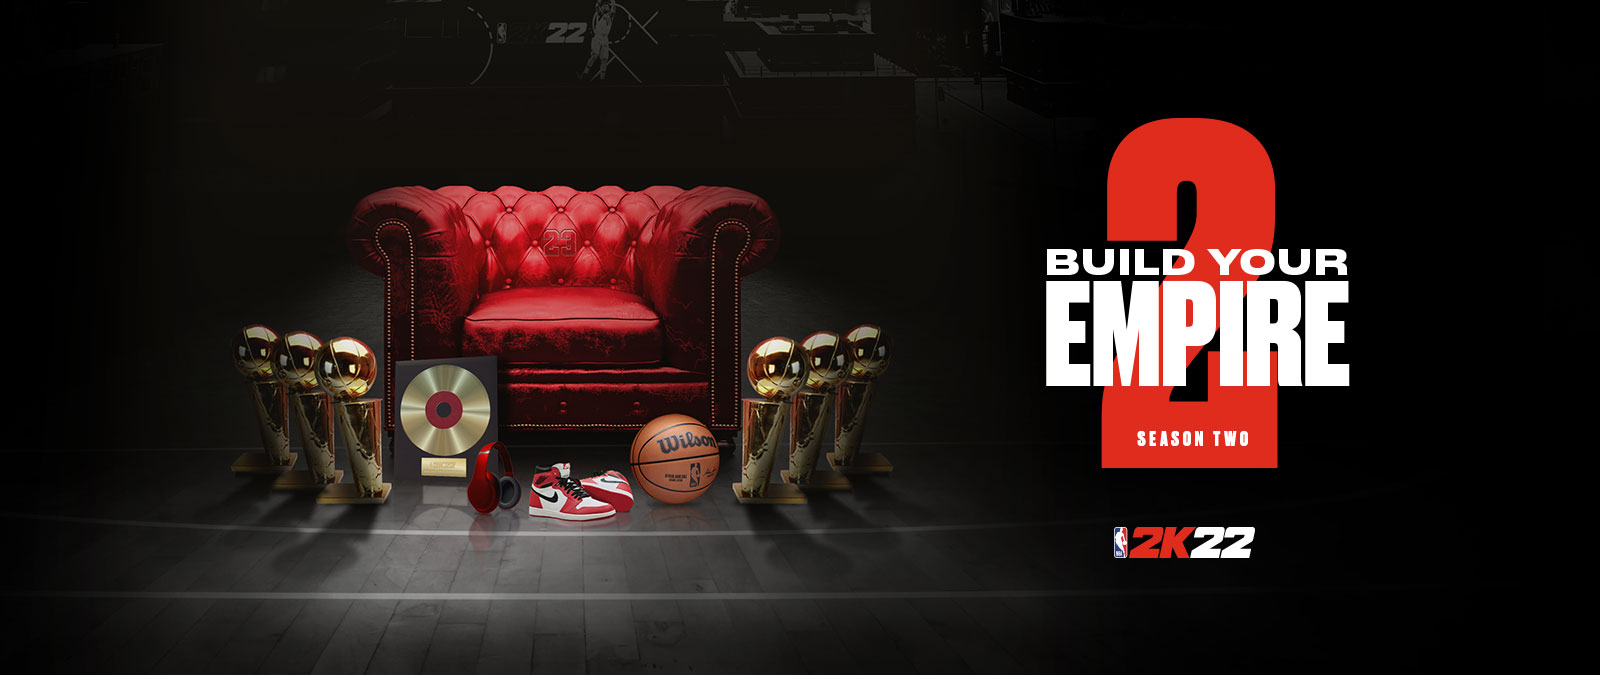 Vybudujte své impérium v Season 2 NBA 2k22: Několik trofejí stojí okolo červeného koženého křesla.